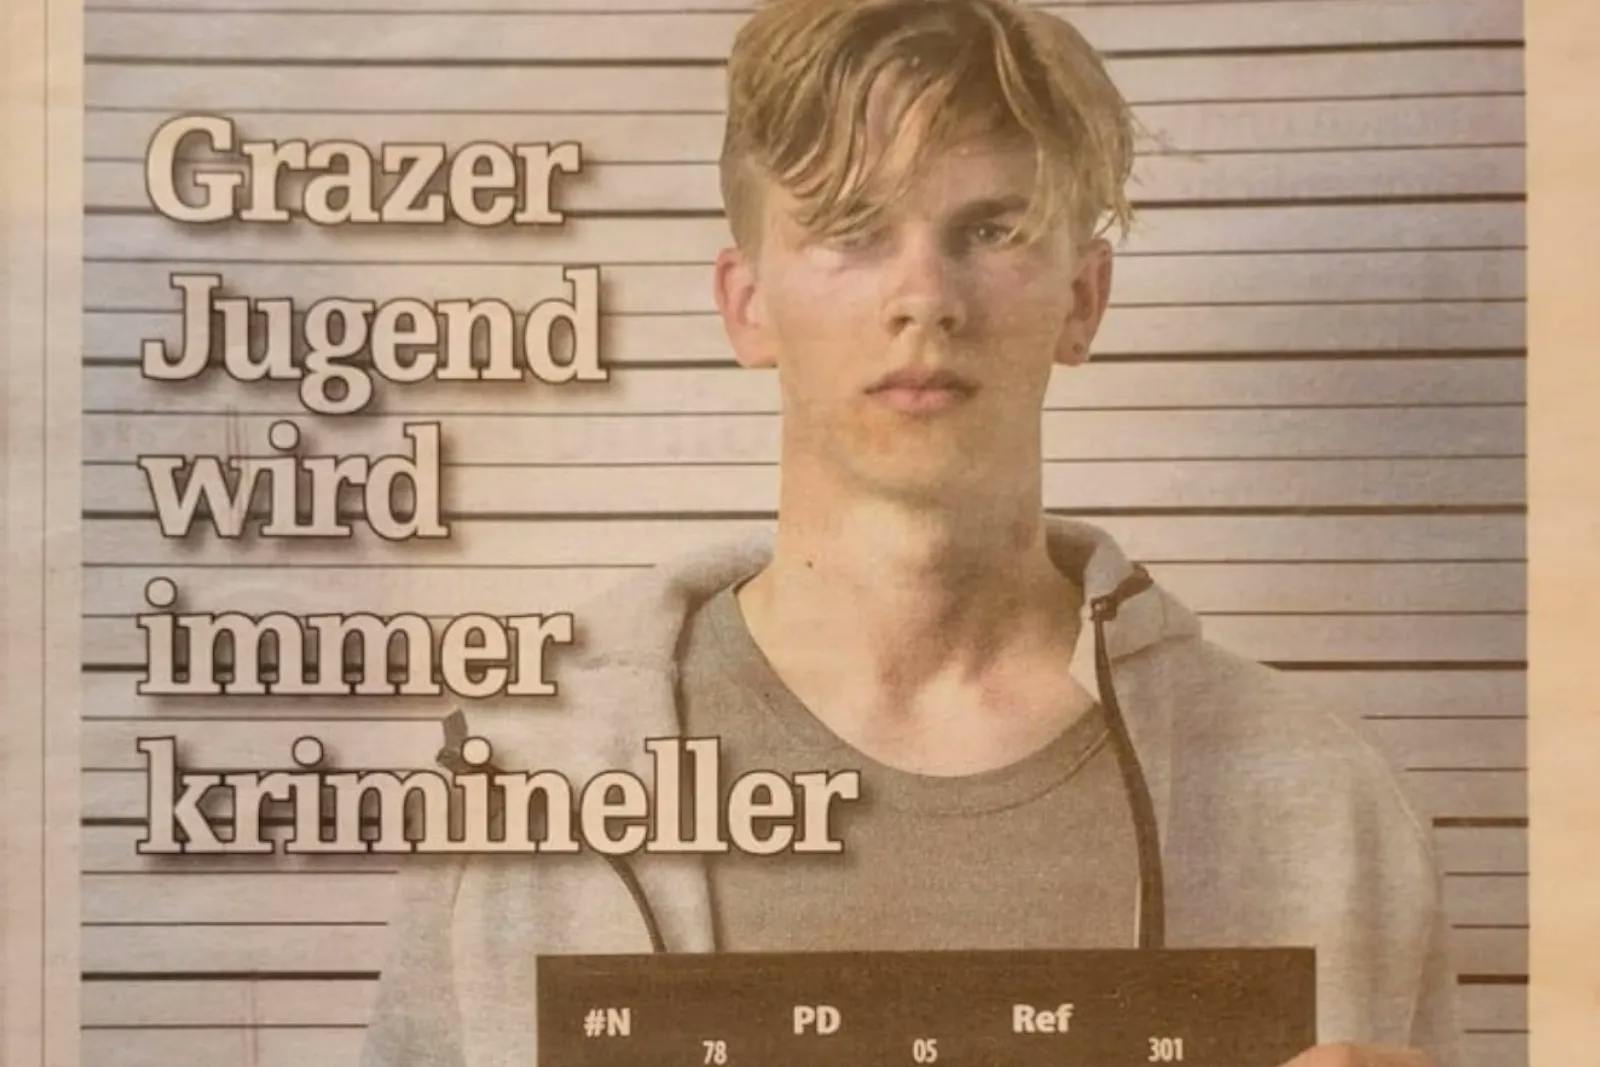 Grazer Stadtzeitung: Steigende Jugendkriminalität wegen weißer, blonder Jugend? 